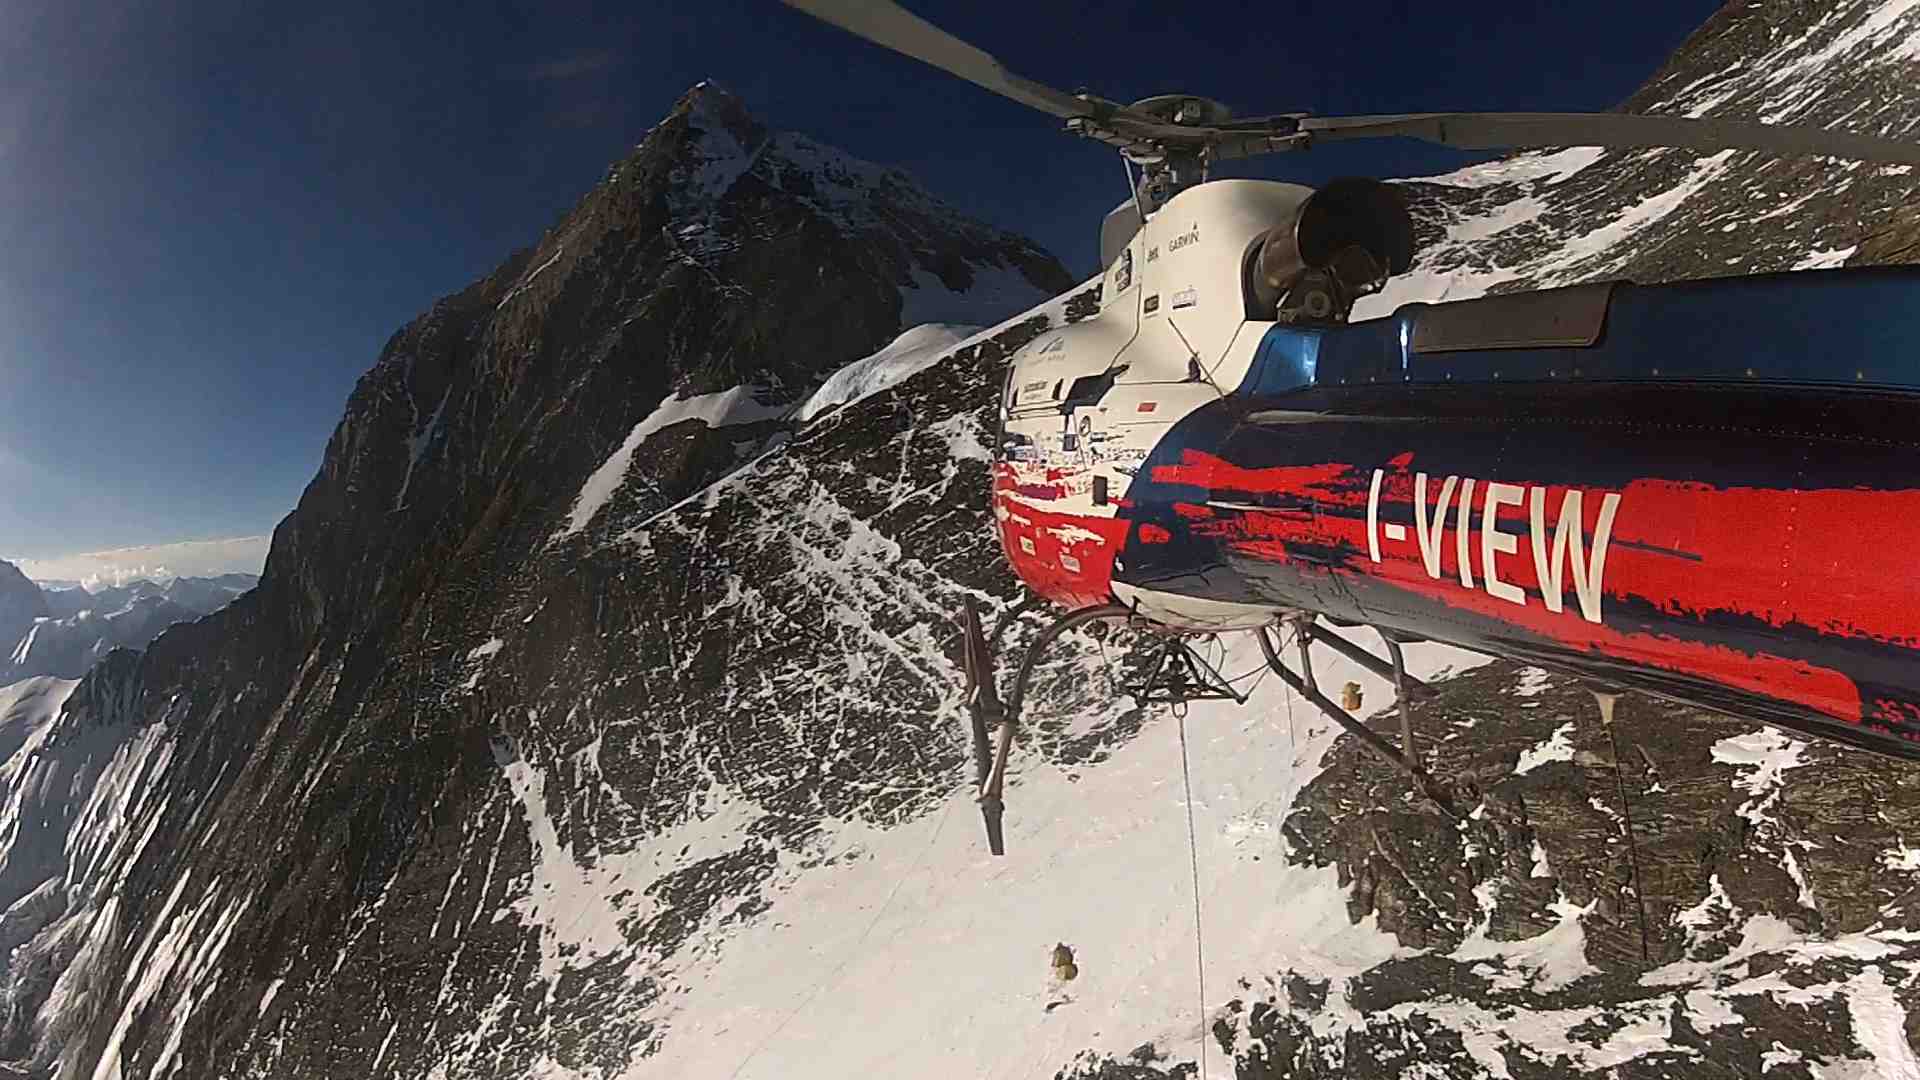 Спасательный вертолет Маурицио Фолини (Maurizio Folini) с пострадавшим альпинистом в носилках на тросе. Эверест. май 2013 года